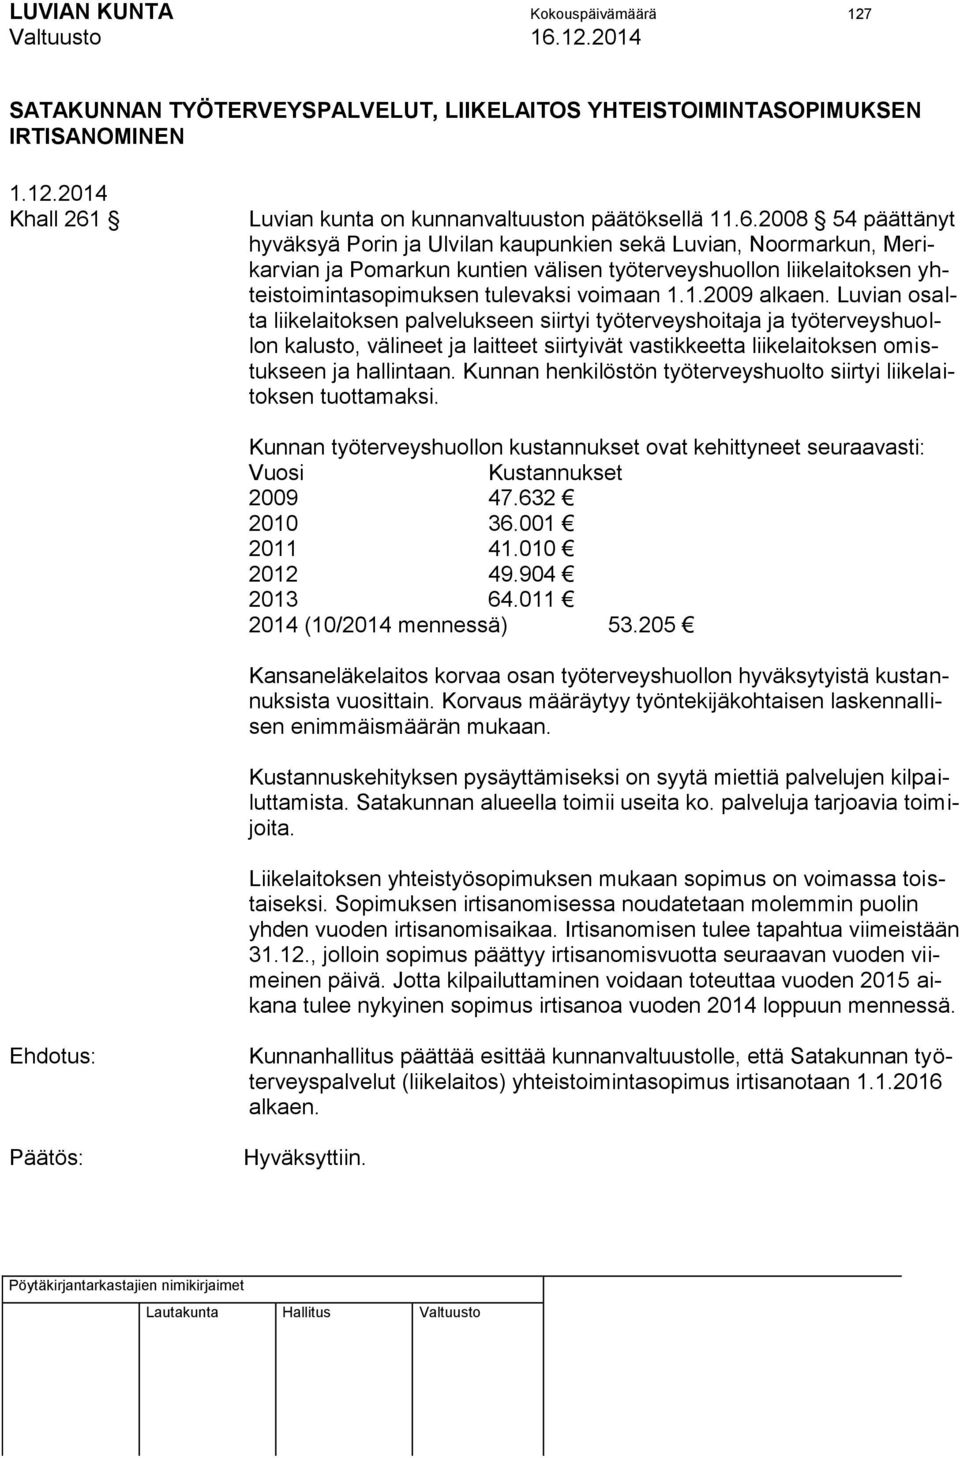 2008 54 päättänyt hyväksyä Porin ja Ulvilan kaupunkien sekä Luvian, Noormarkun, Merikarvian ja Pomarkun kuntien välisen työterveyshuollon liikelaitoksen yhteistoimintasopimuksen tulevaksi voimaan 1.